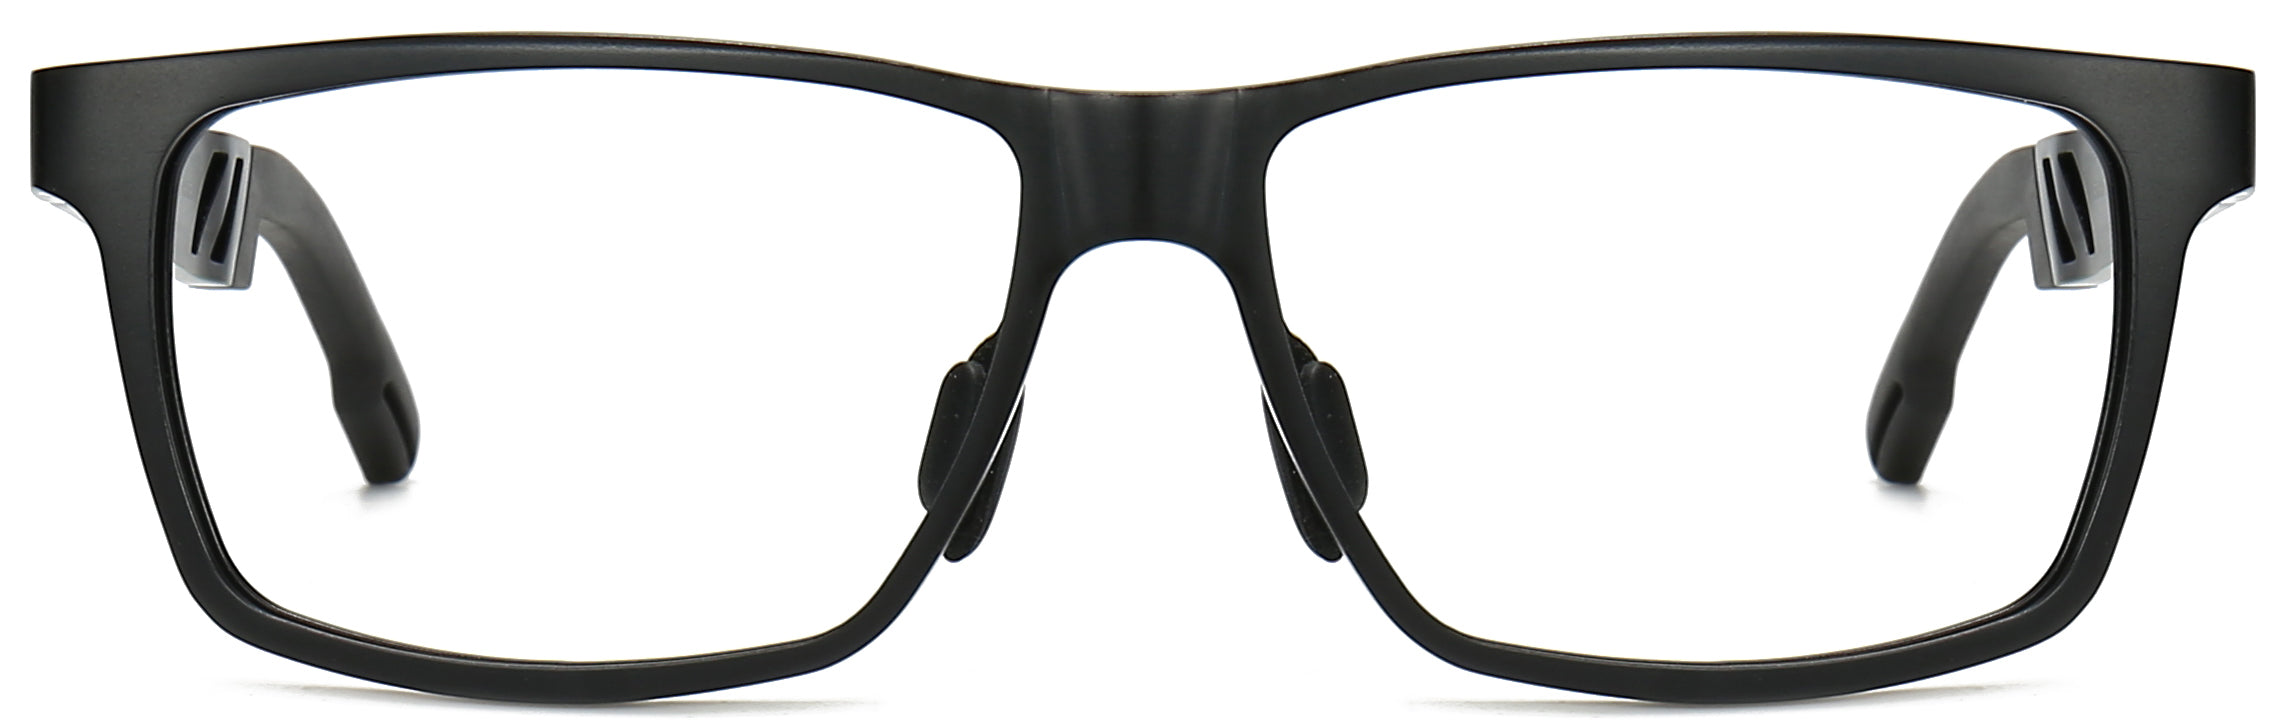 Bert Black Alloy Eyeglasses from ANRRI